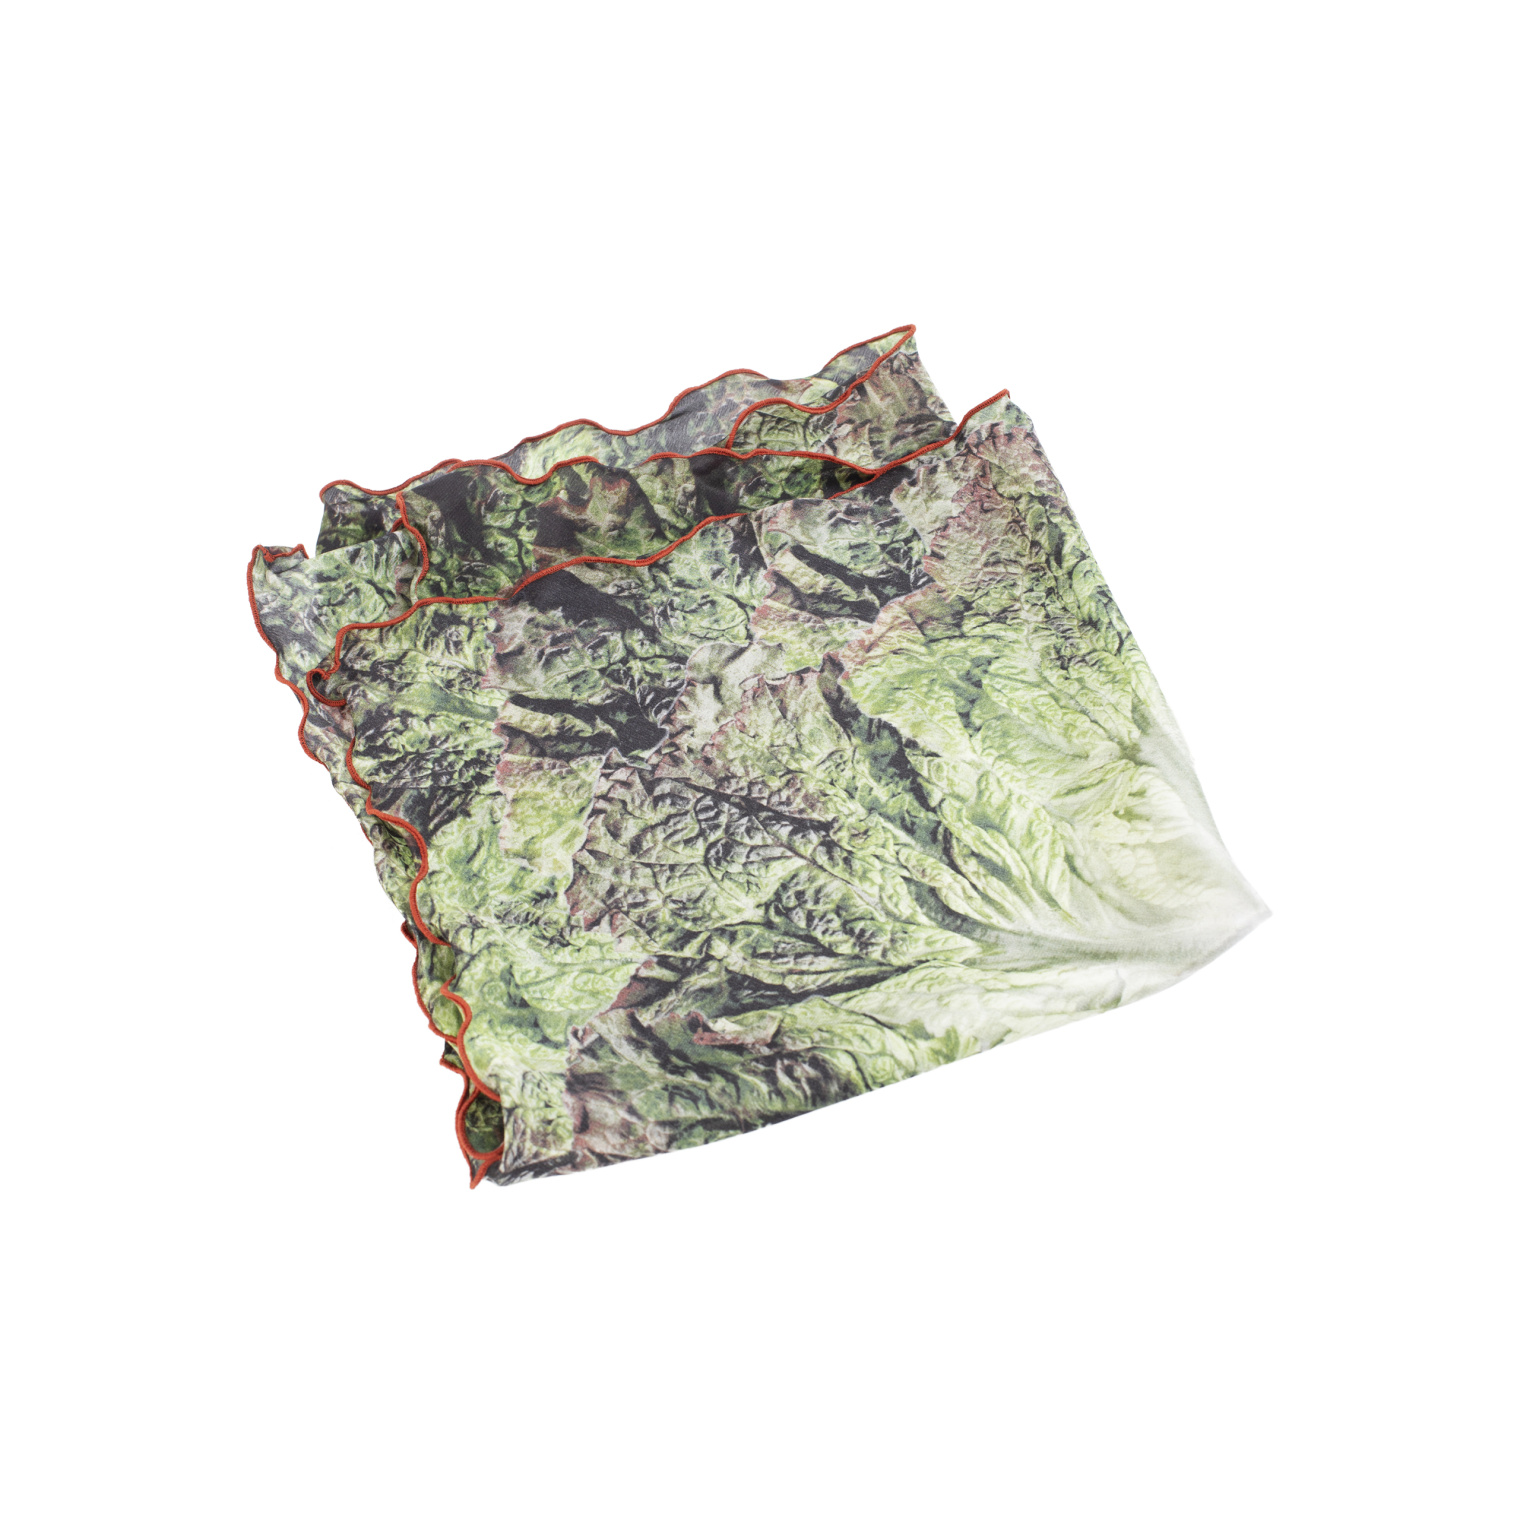 Doublet Шелковый шарф с принтом салатного листа